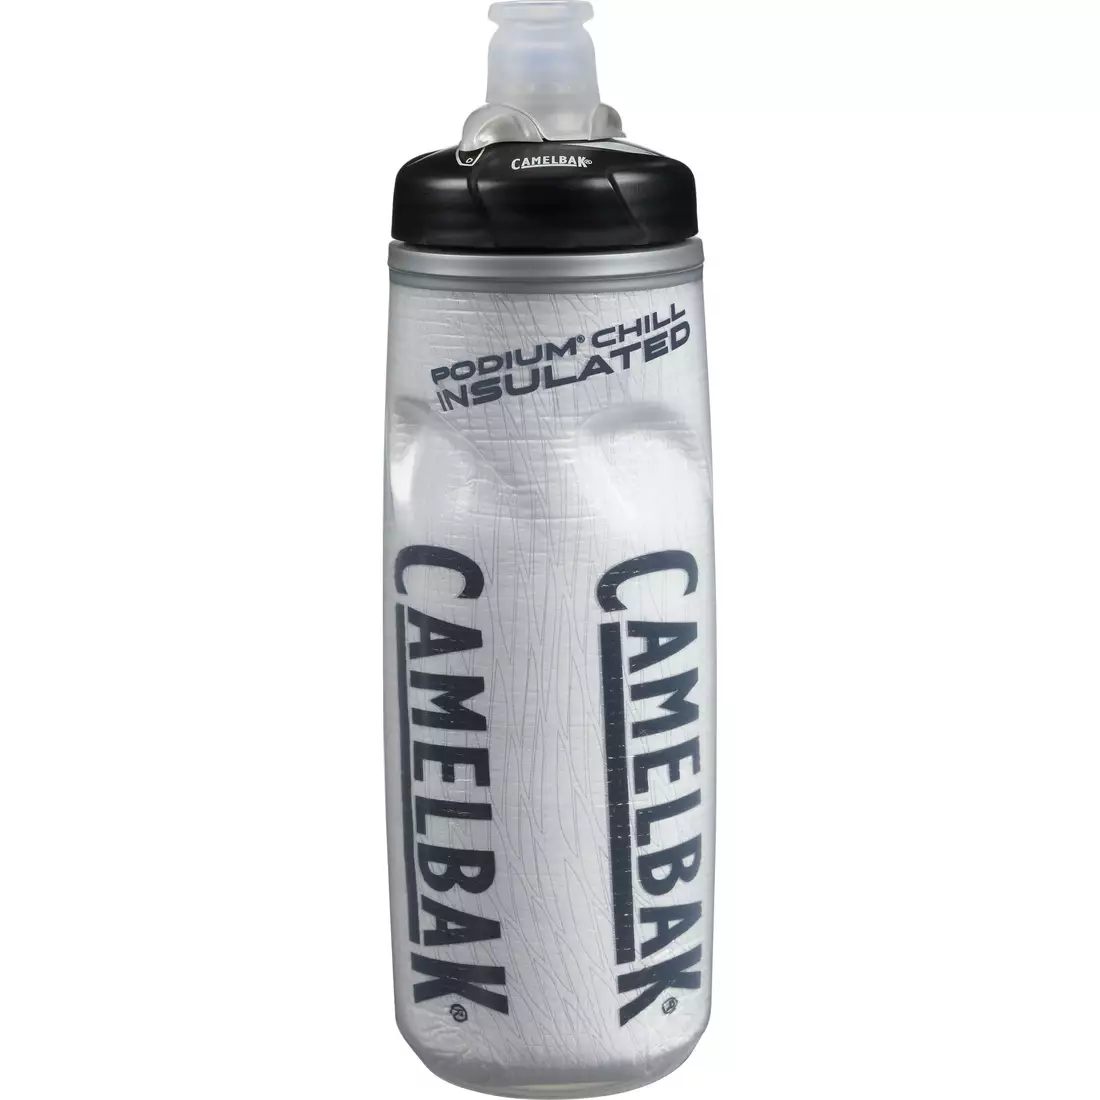 Camelbak SS18 termální cyklistická láhev na vodu Podium Chill 21oz/620ml Race Edition